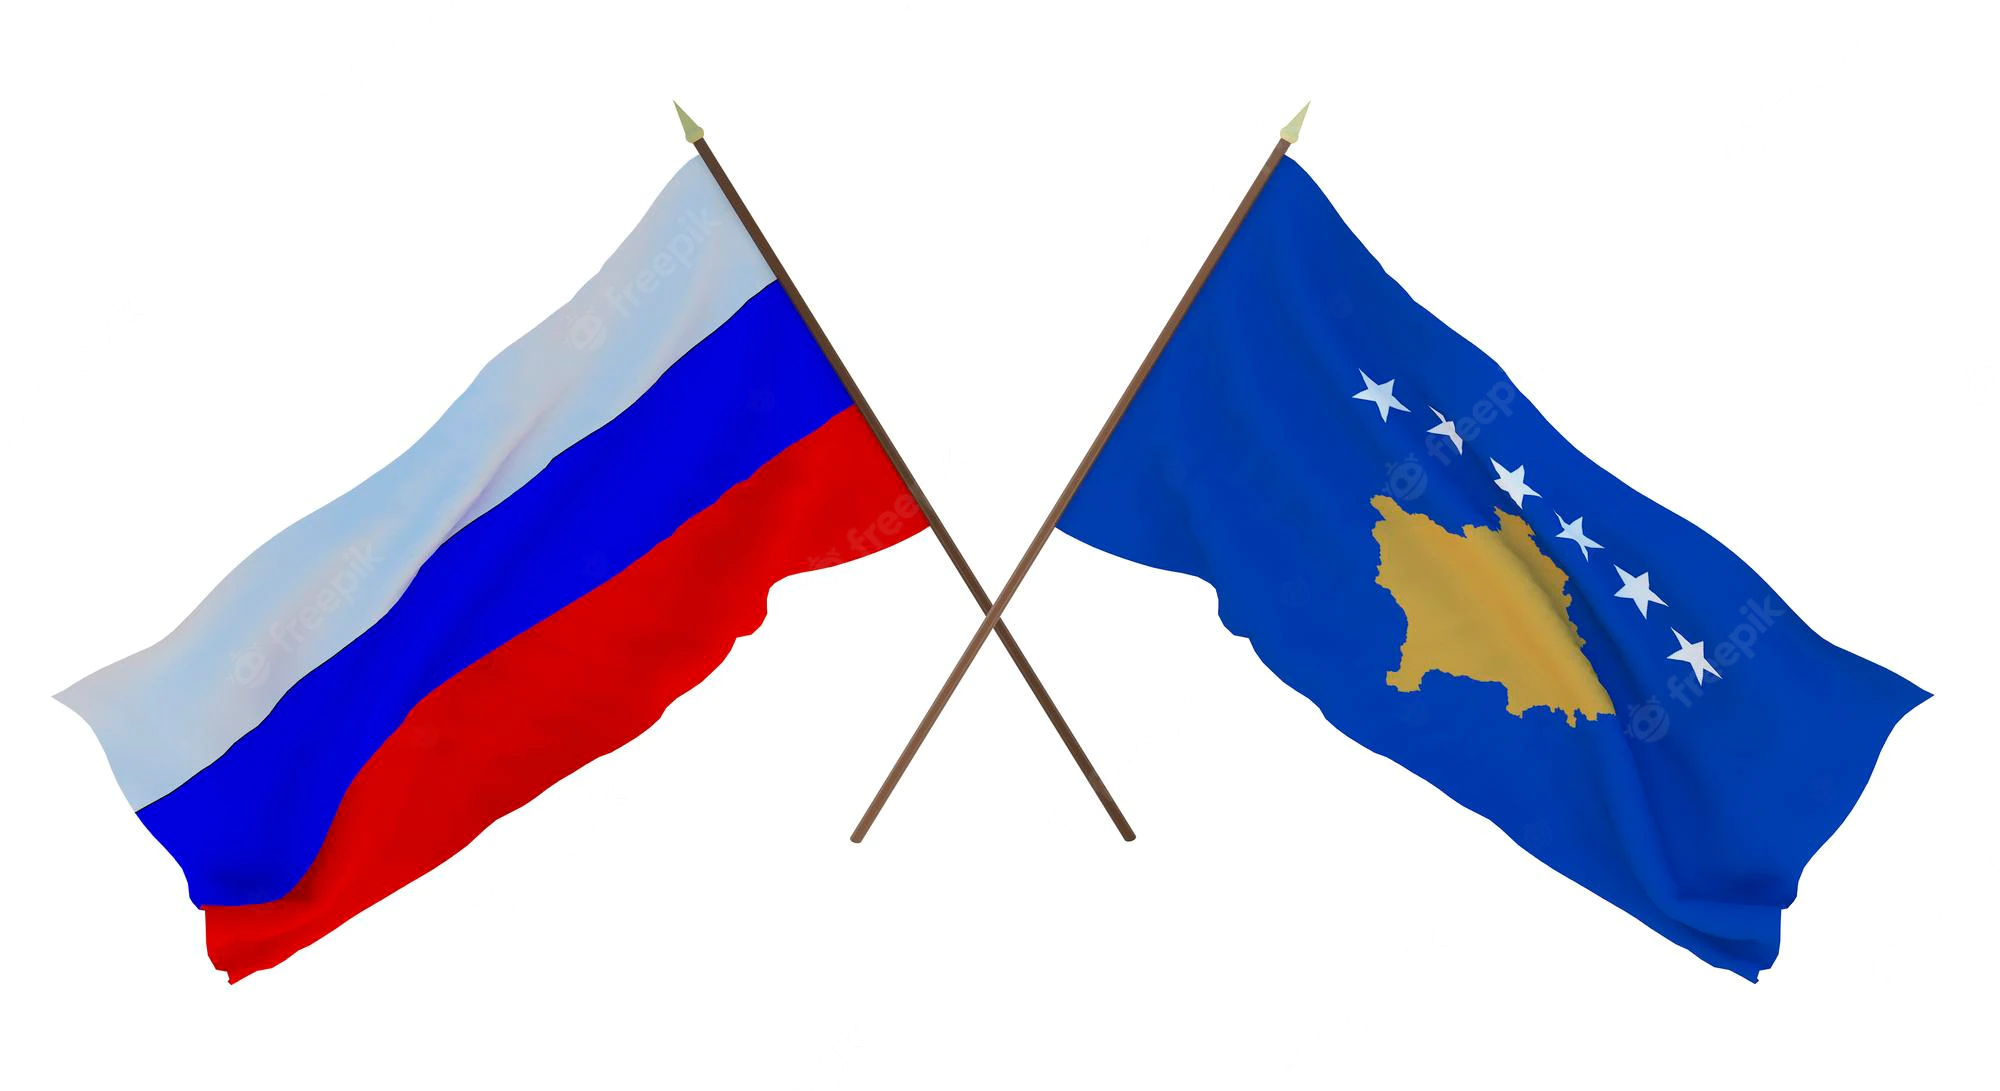 Kjo që po ndodhë tani në Kosovë, e kam fjalën për qasjen e ndërkombëtarëve, i shkon në favor Rusisë